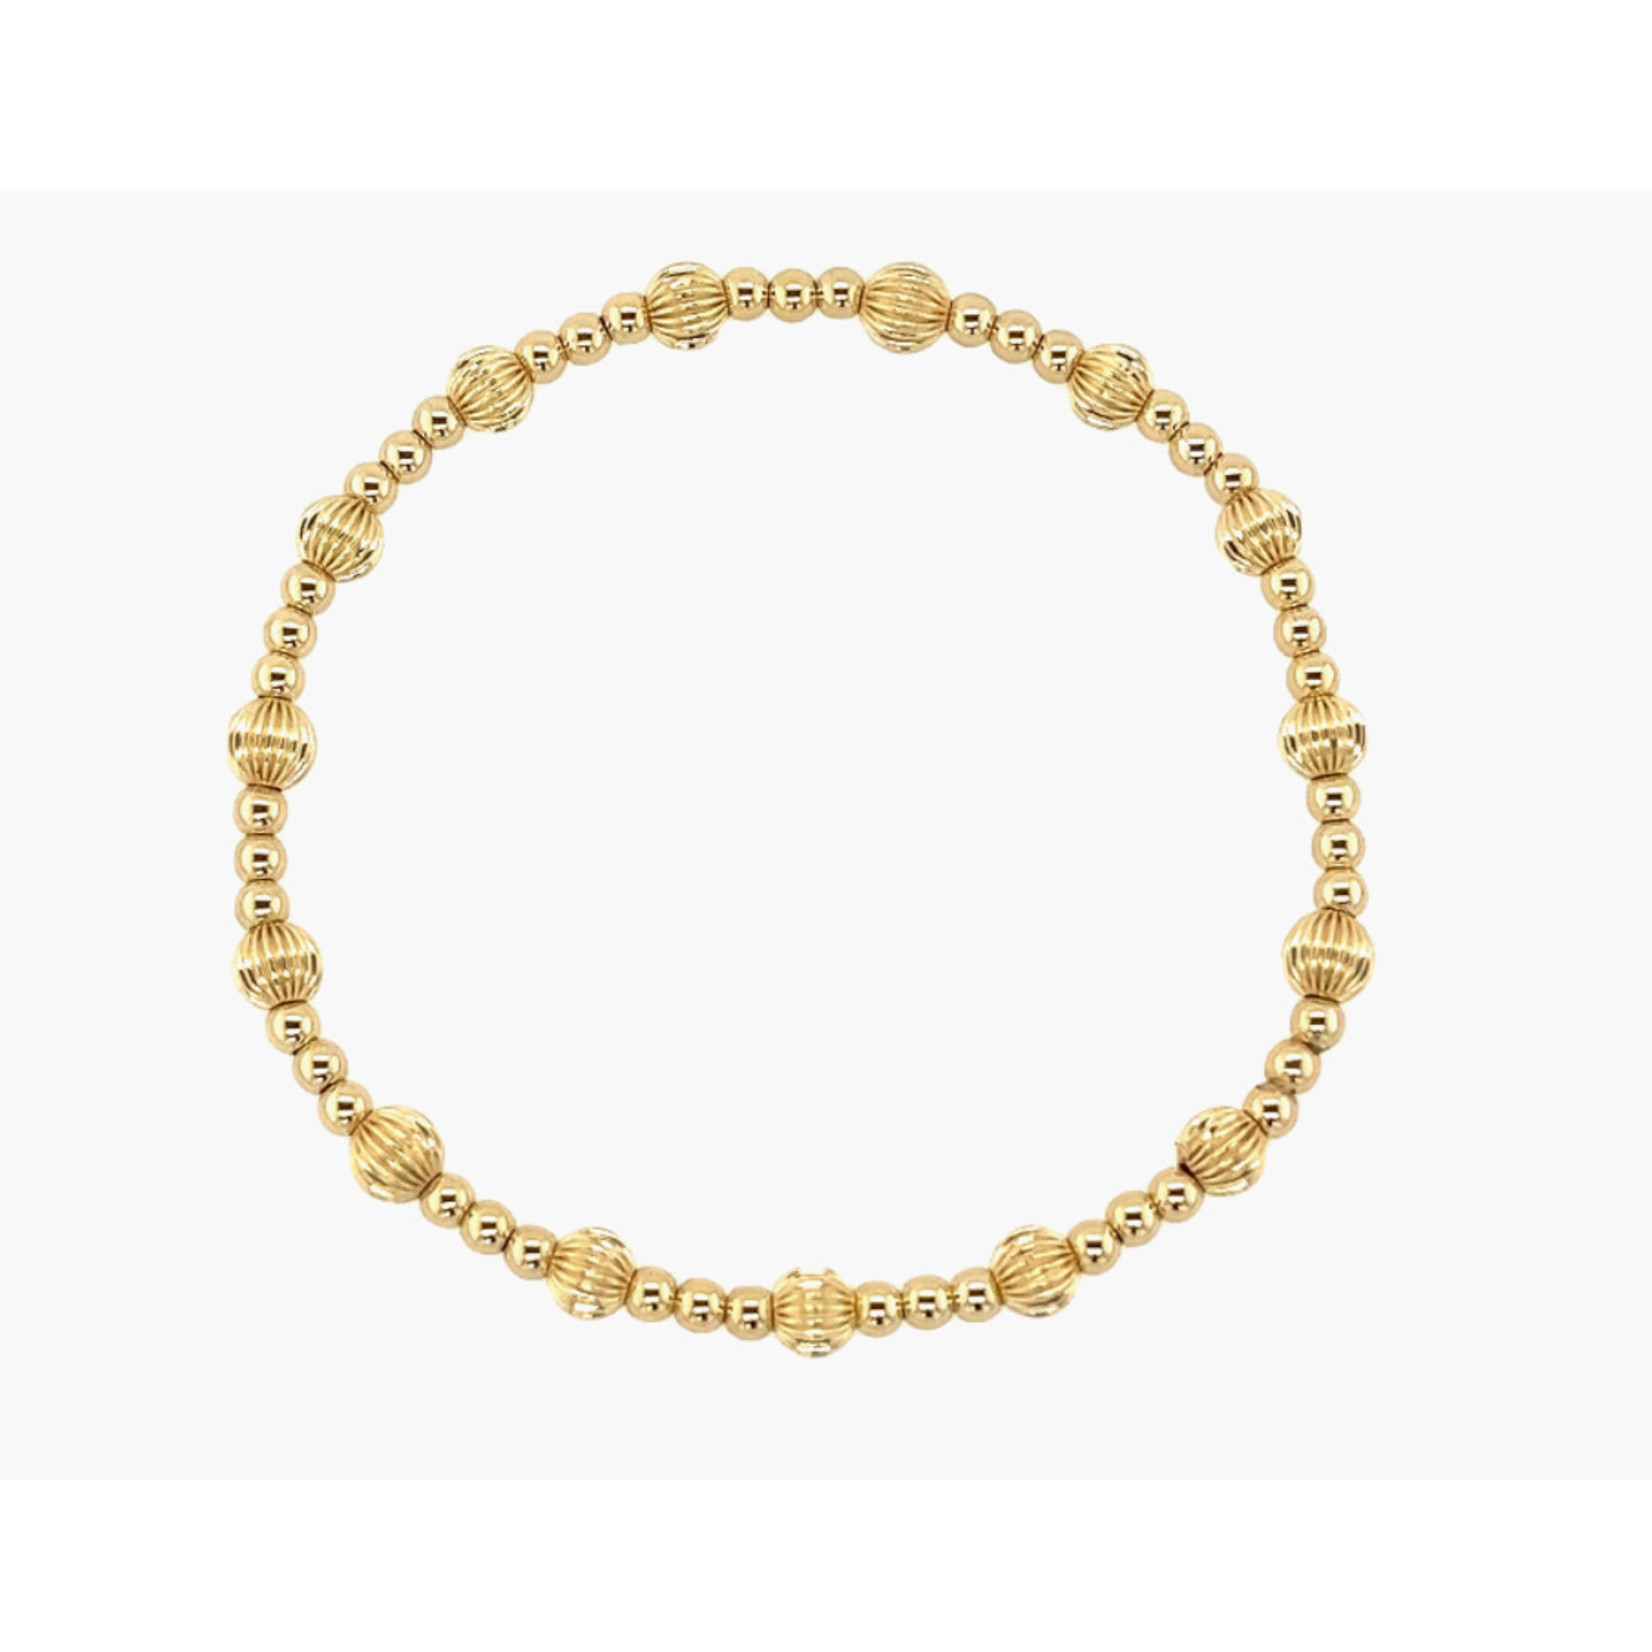 Bara Boheme Jewelry “London” GF - 6.25